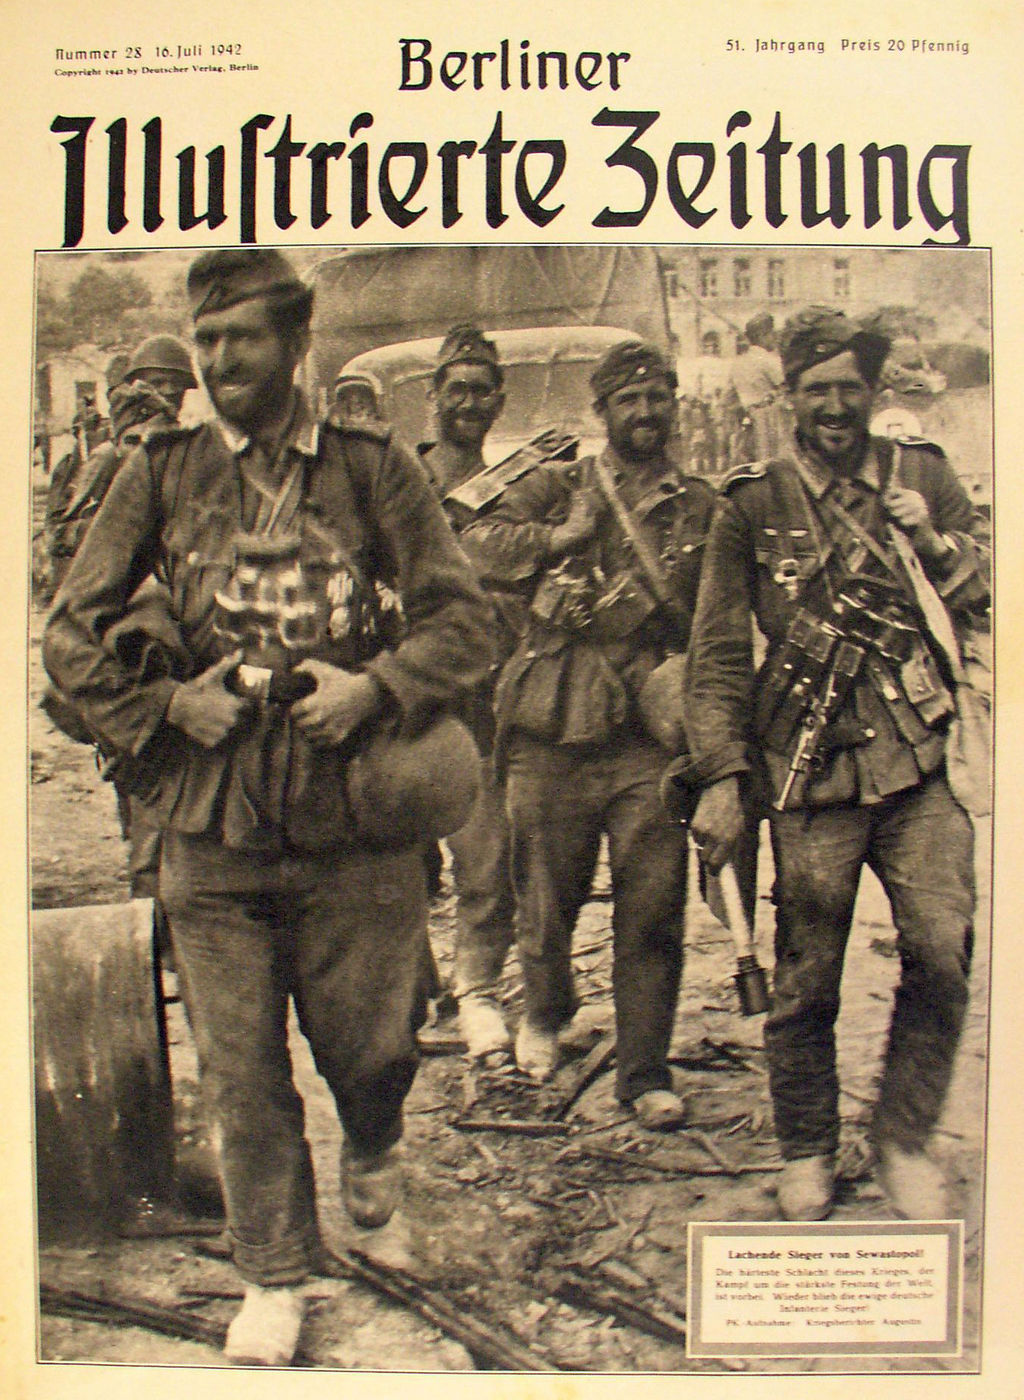 Exponat: Druckschrift: "Berliner Illustrierte Zeitung", 1942